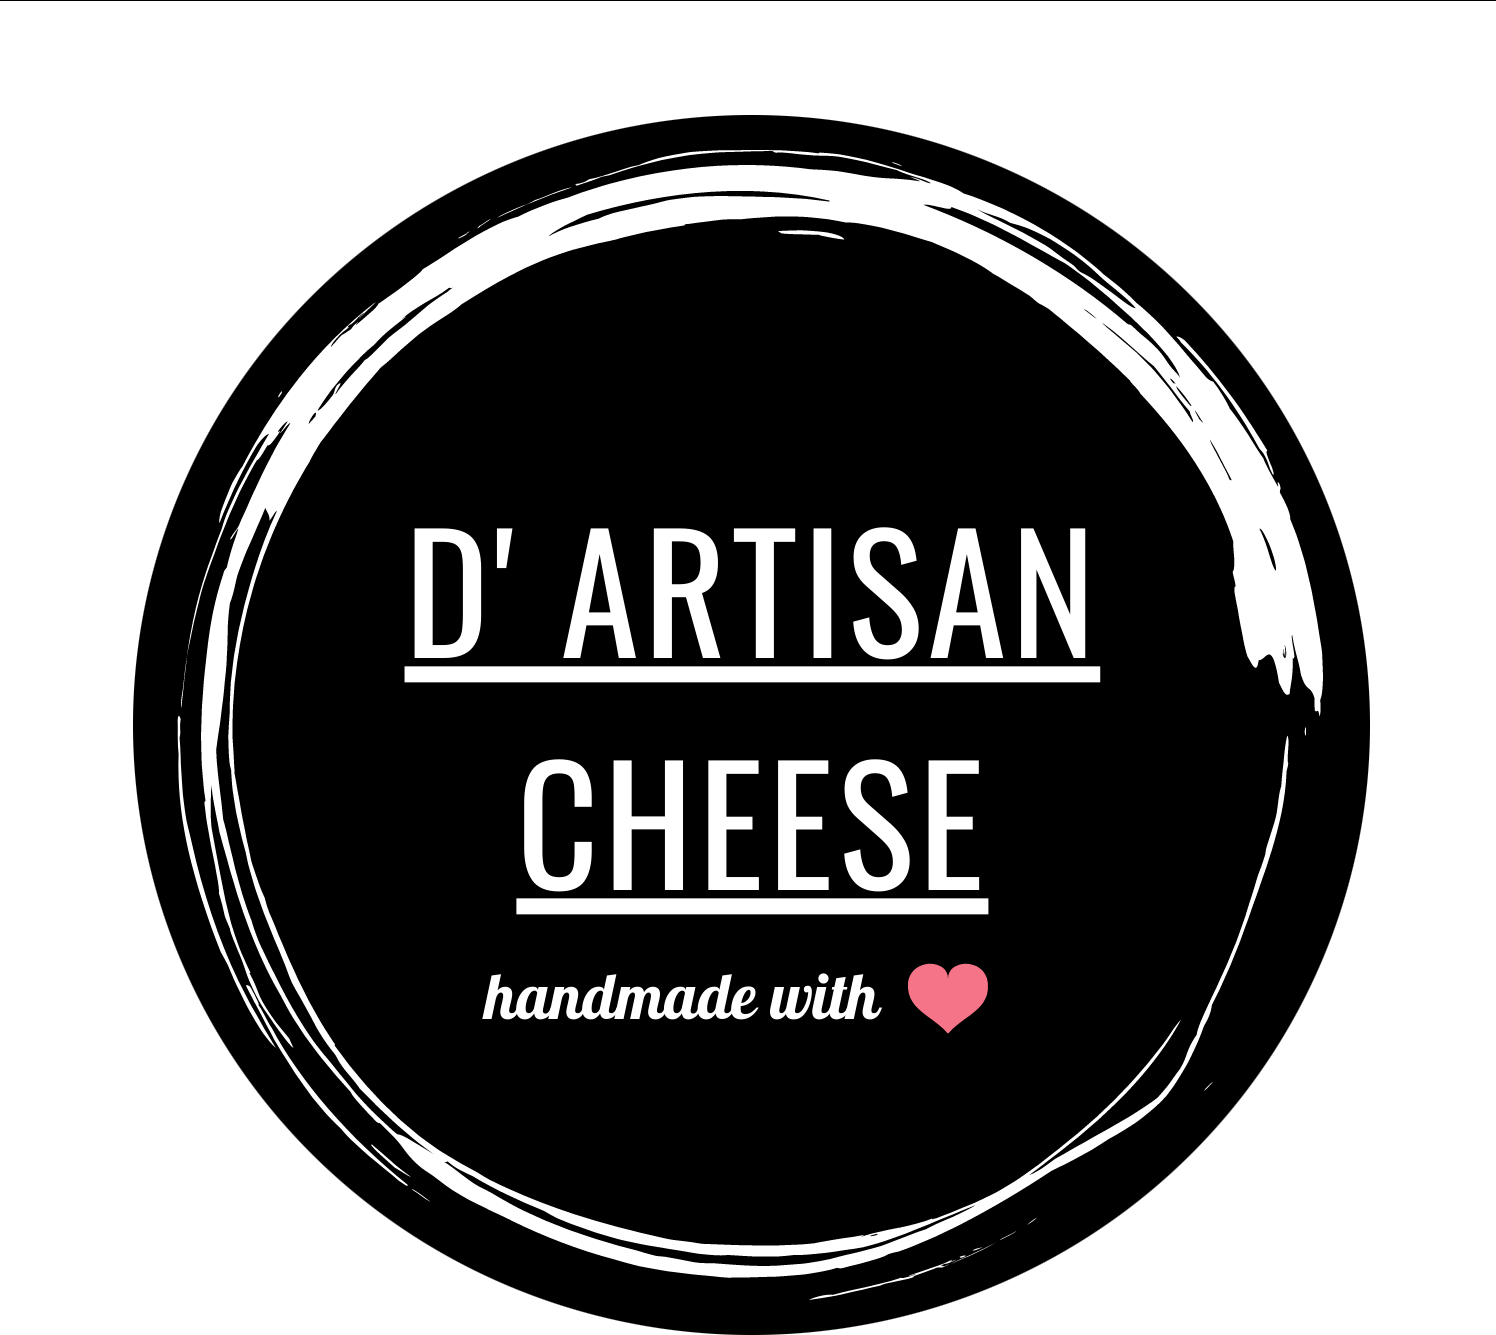 Dartisan Cheese